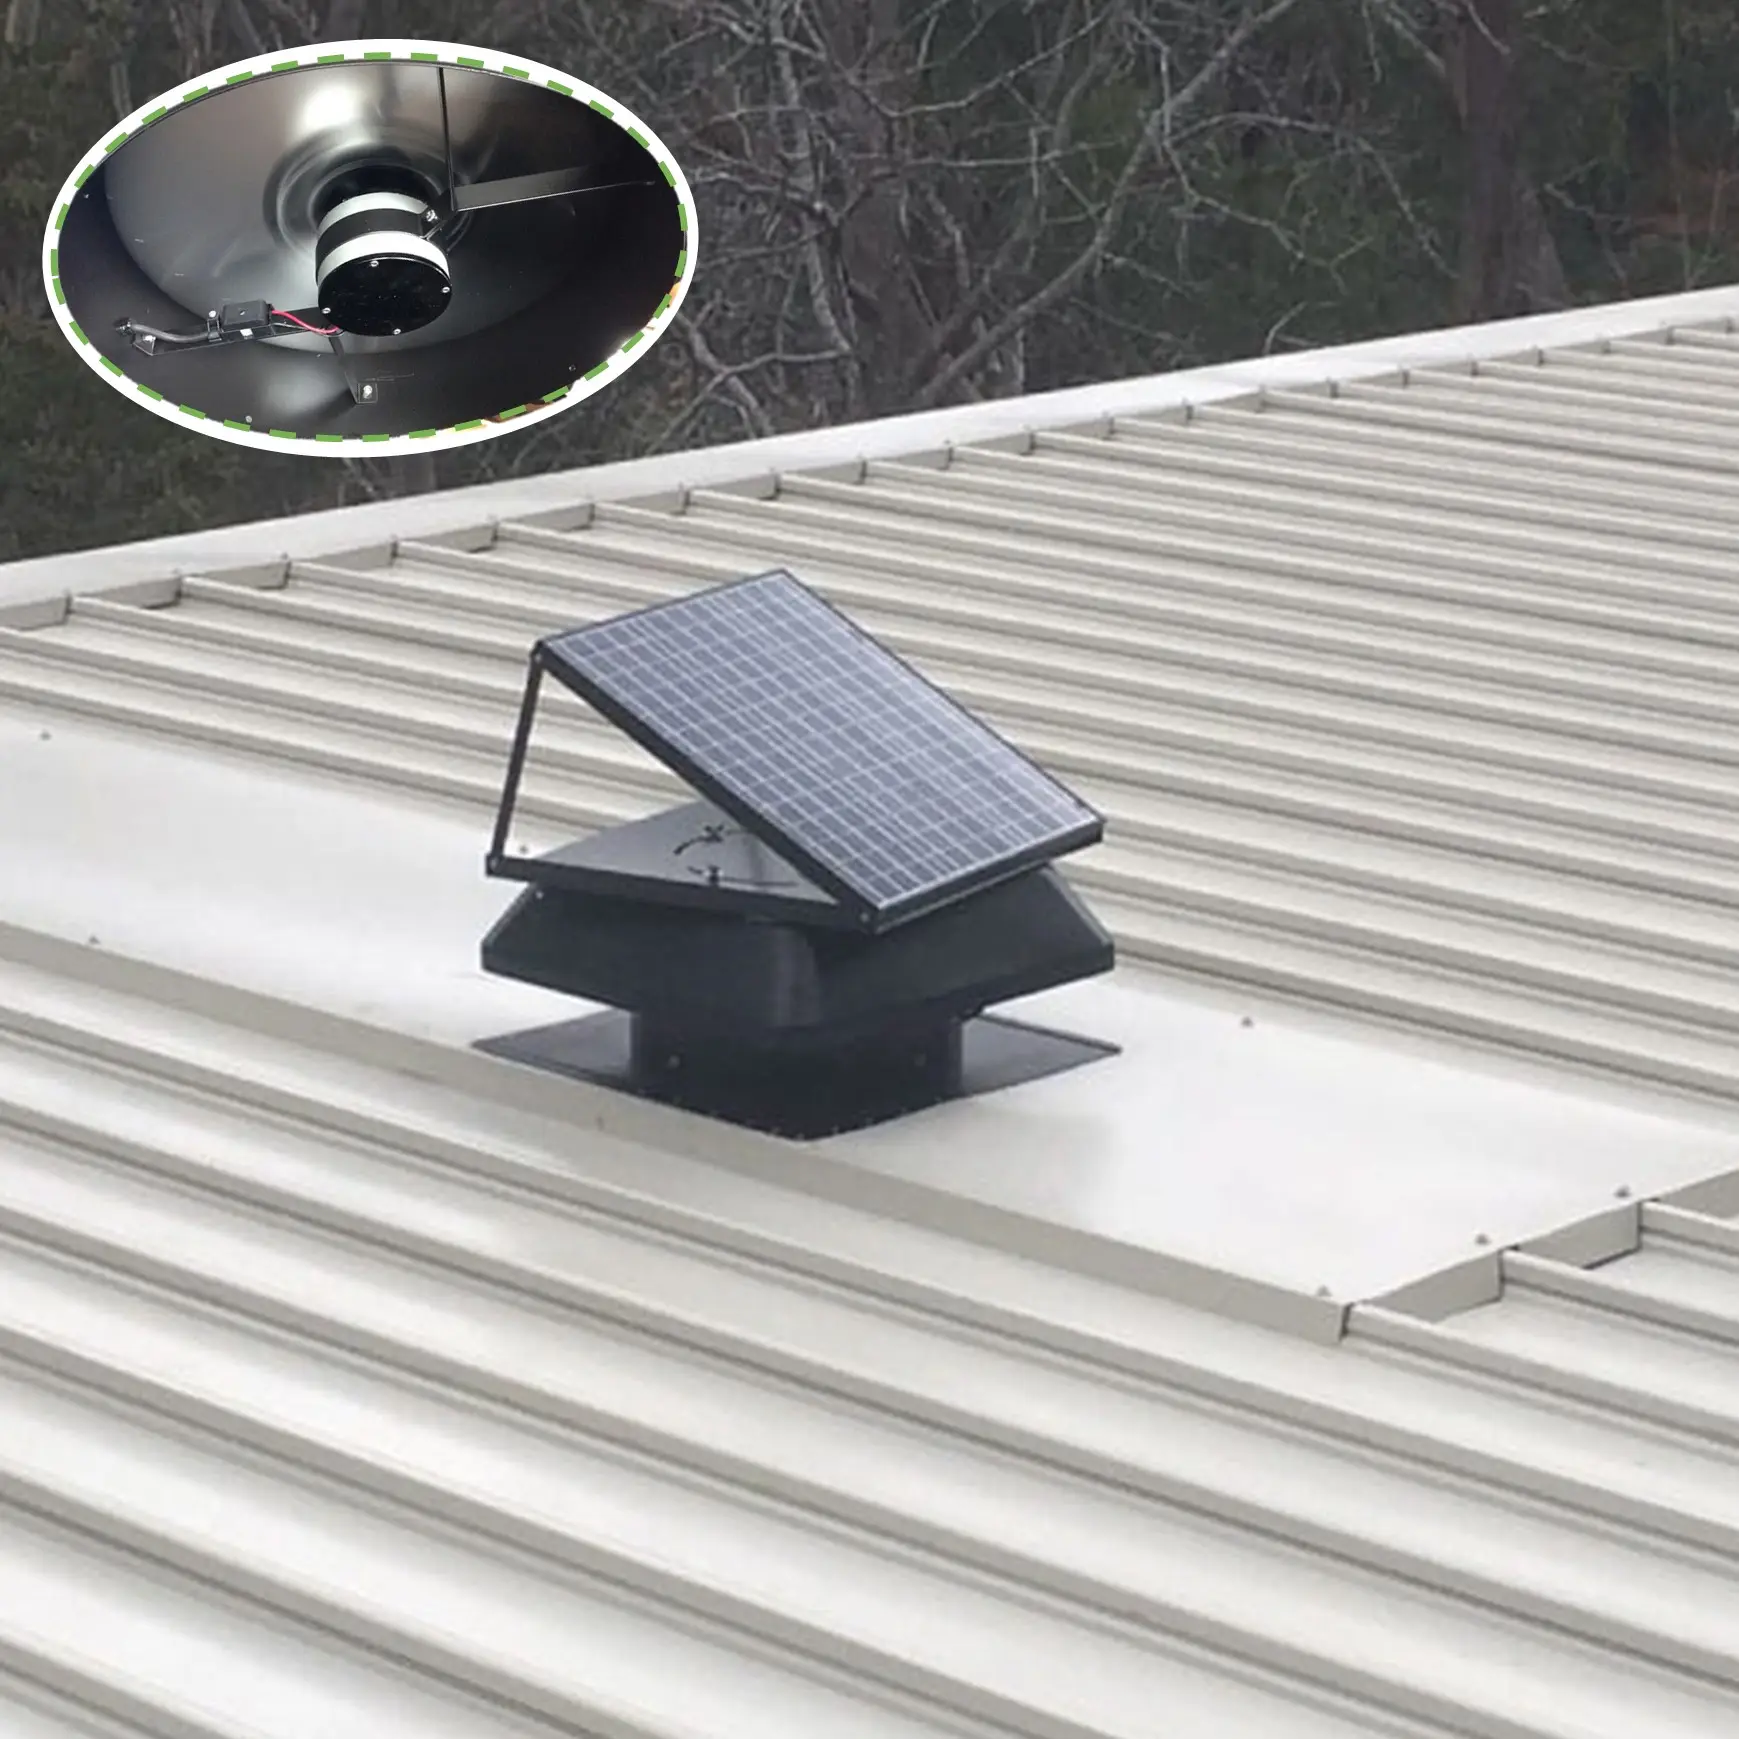 50W 태양광 패널 산업용 지붕 다락방 배기 팬 스마트 하이브리드 파워 태양광 환기 관련 상품 옥상 환풍기